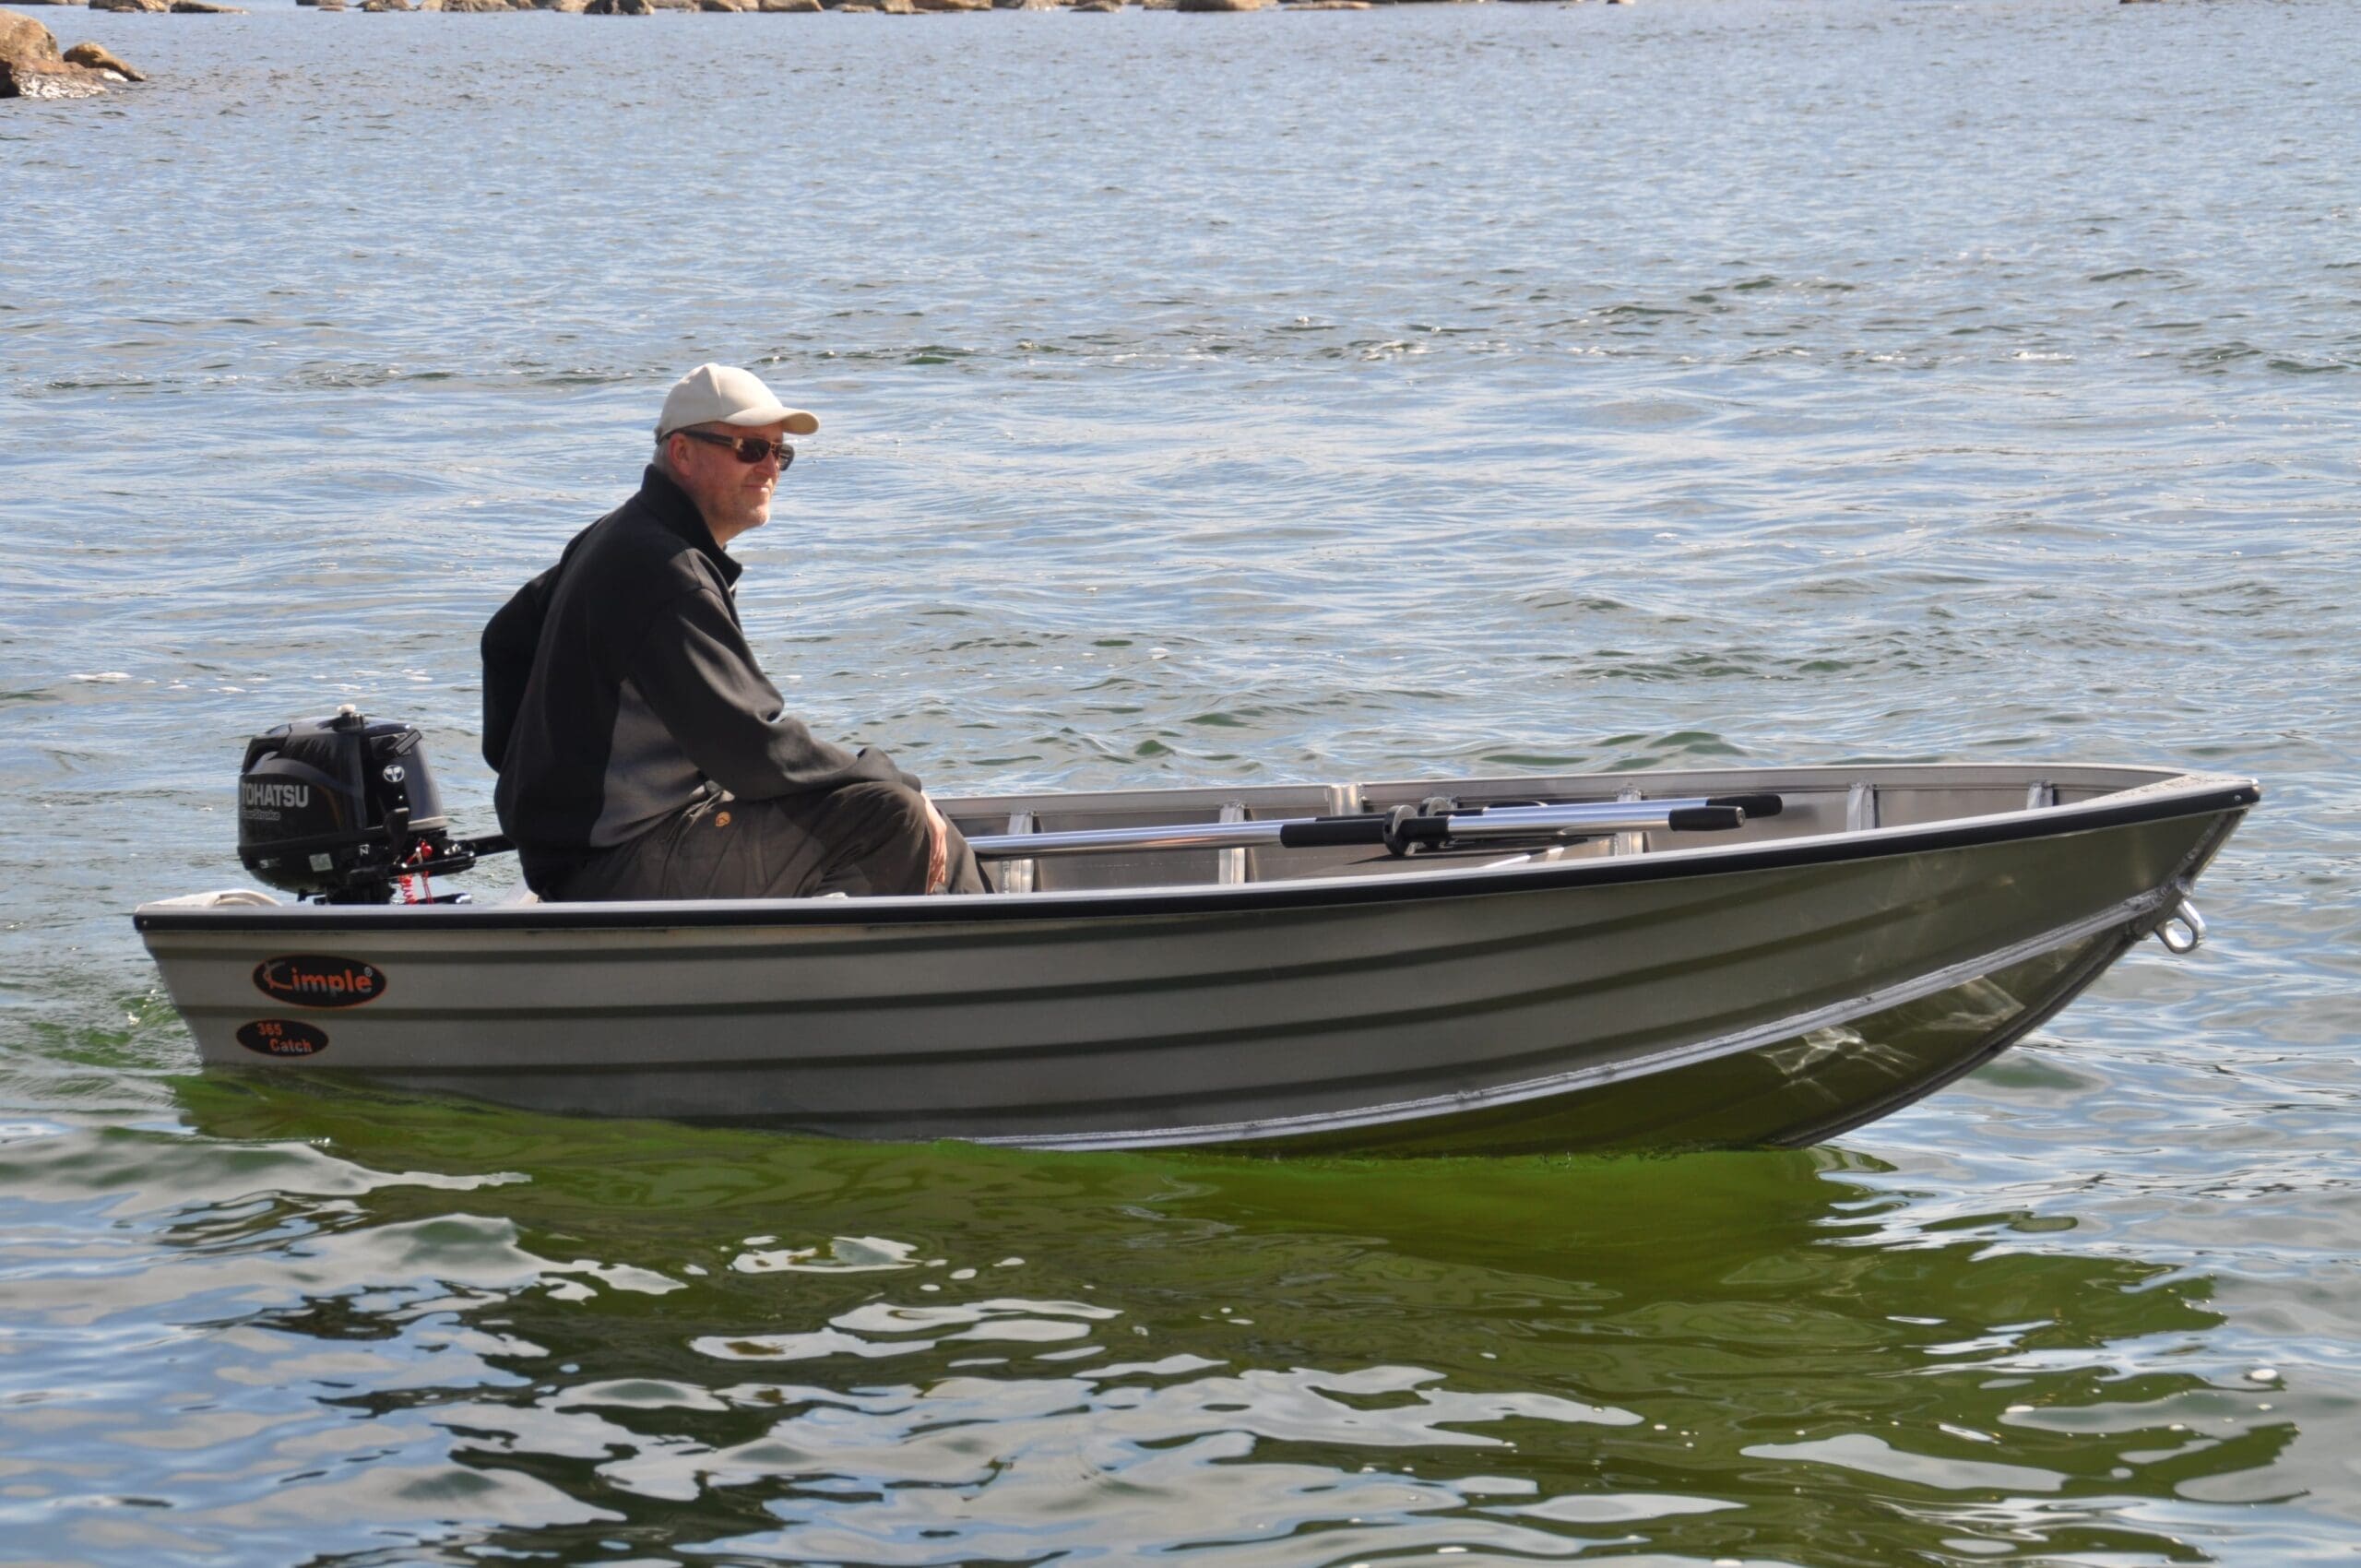 Kimple 365 Catch är lätt att hantera när du vill sjösätta och ta upp båten och dessutom riktigt trevlig i sjön. En aluminiumbåt som passar fint som roddbåt i sjö och innerskärgård.